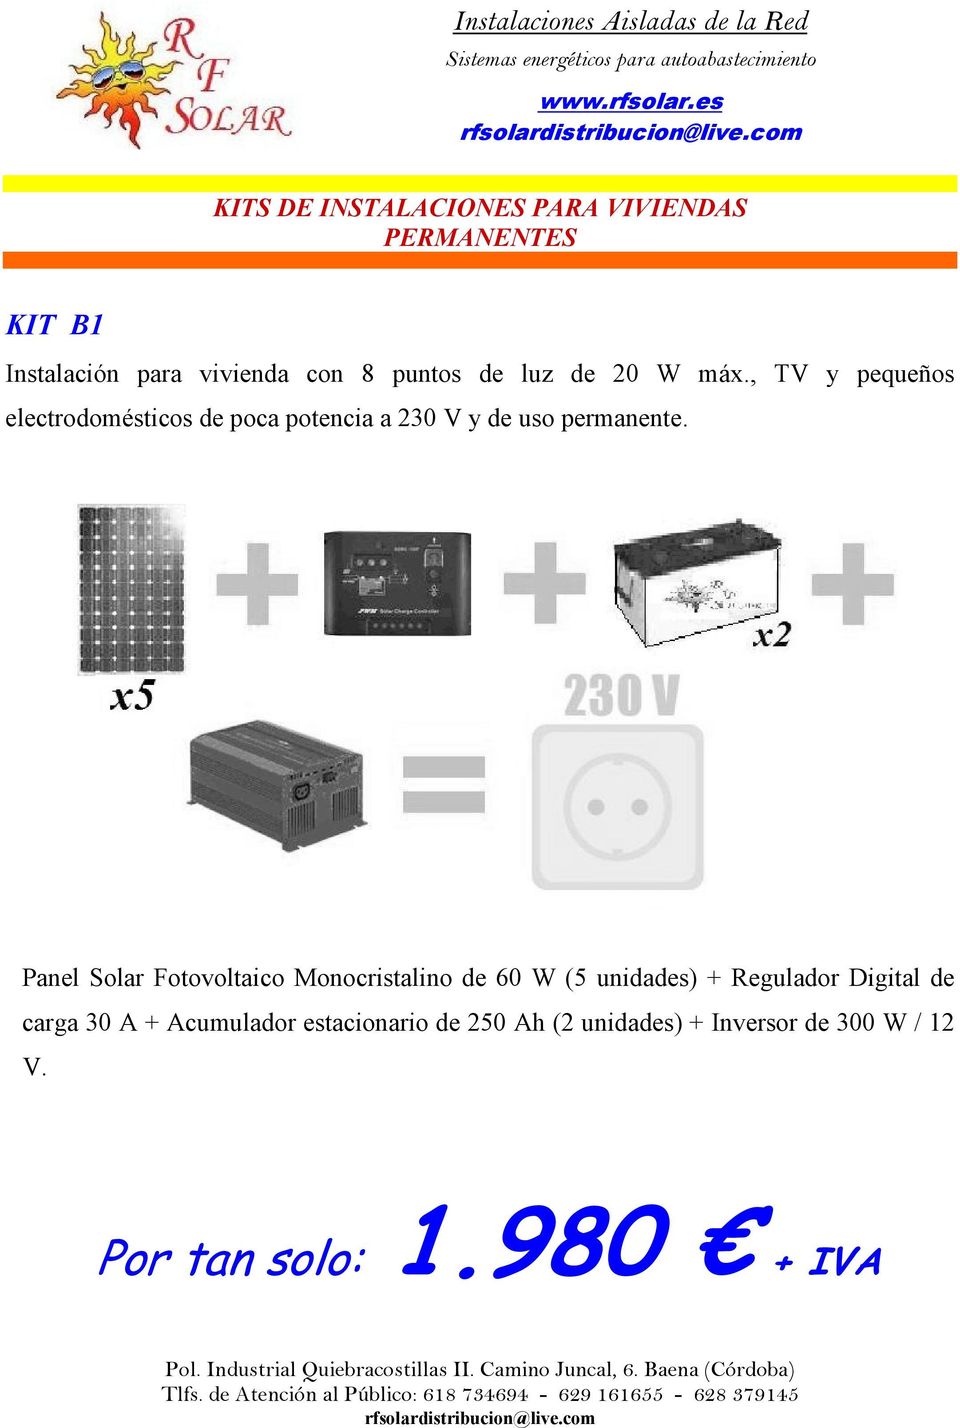 Panel Solar Fotovoltaico Monocristalino de 60 W (5 unidades) + Regulador Digital de